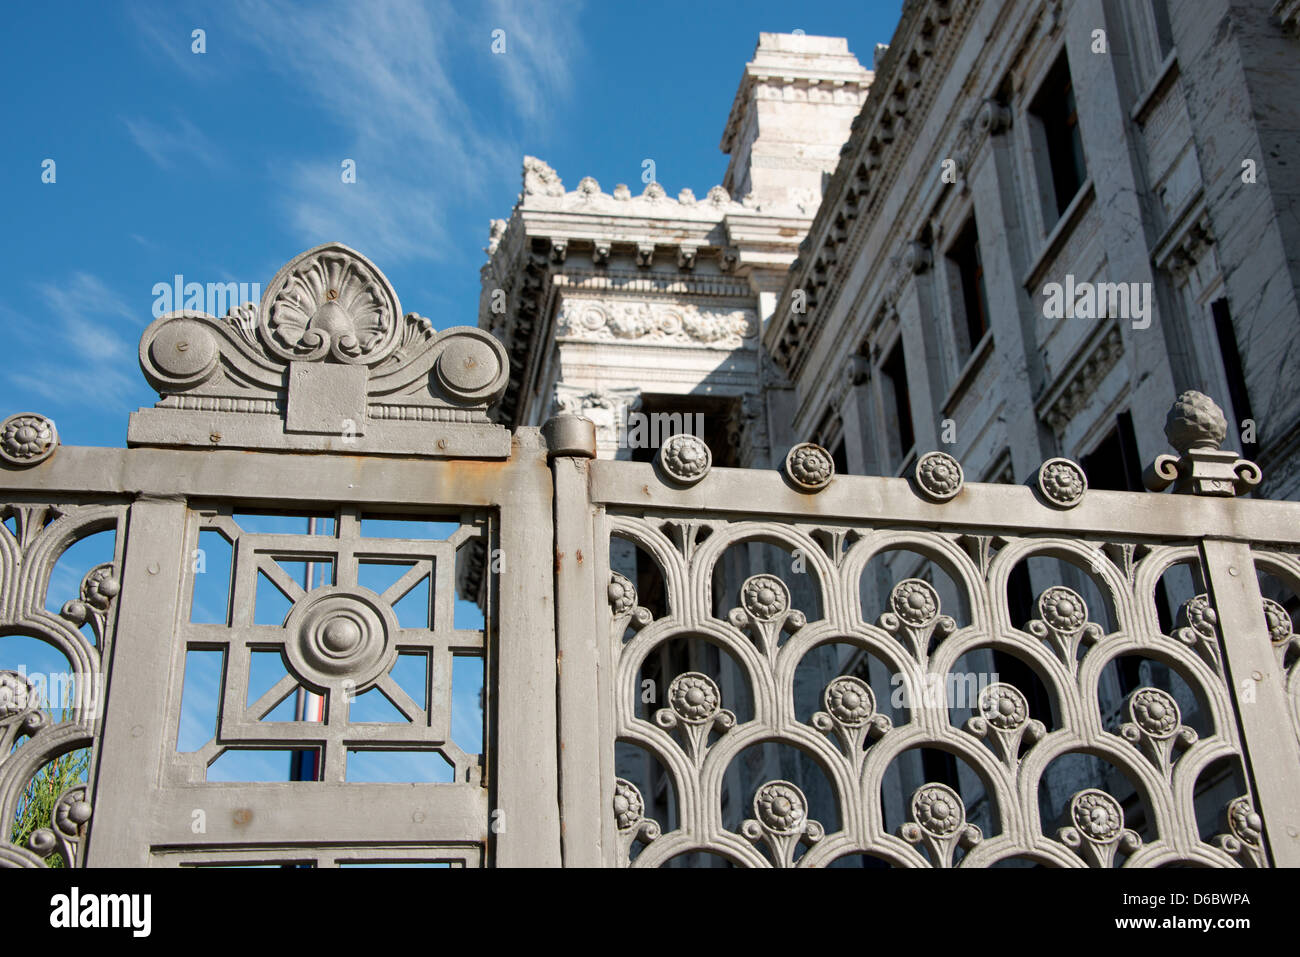 L'Uruguay, Montevideo. Palais législatif historique, siège de Parlement uruguayen. Banque D'Images